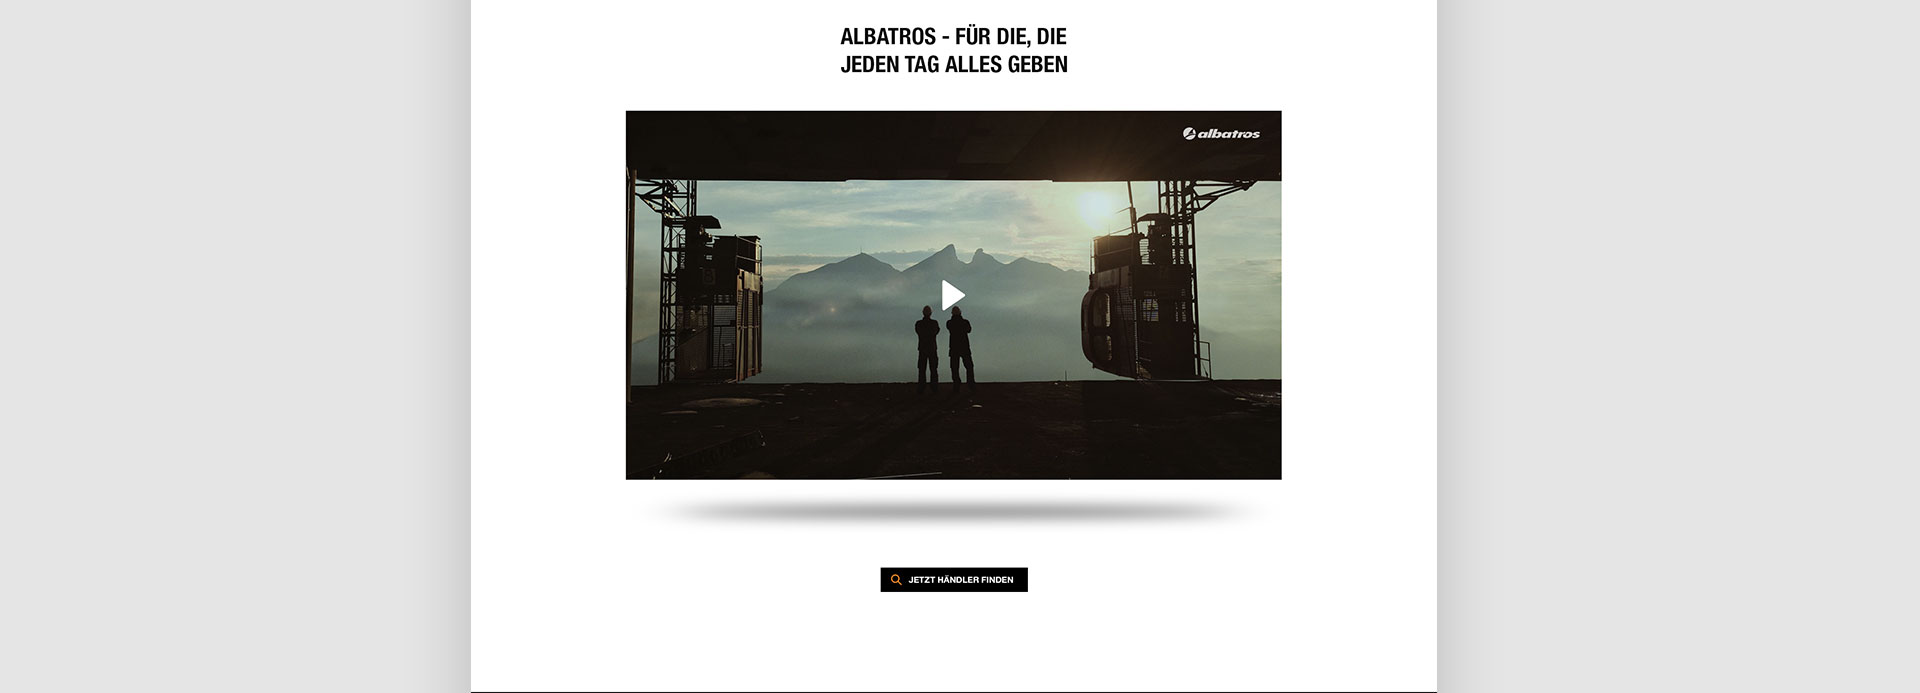 Albatros TV Kampagne